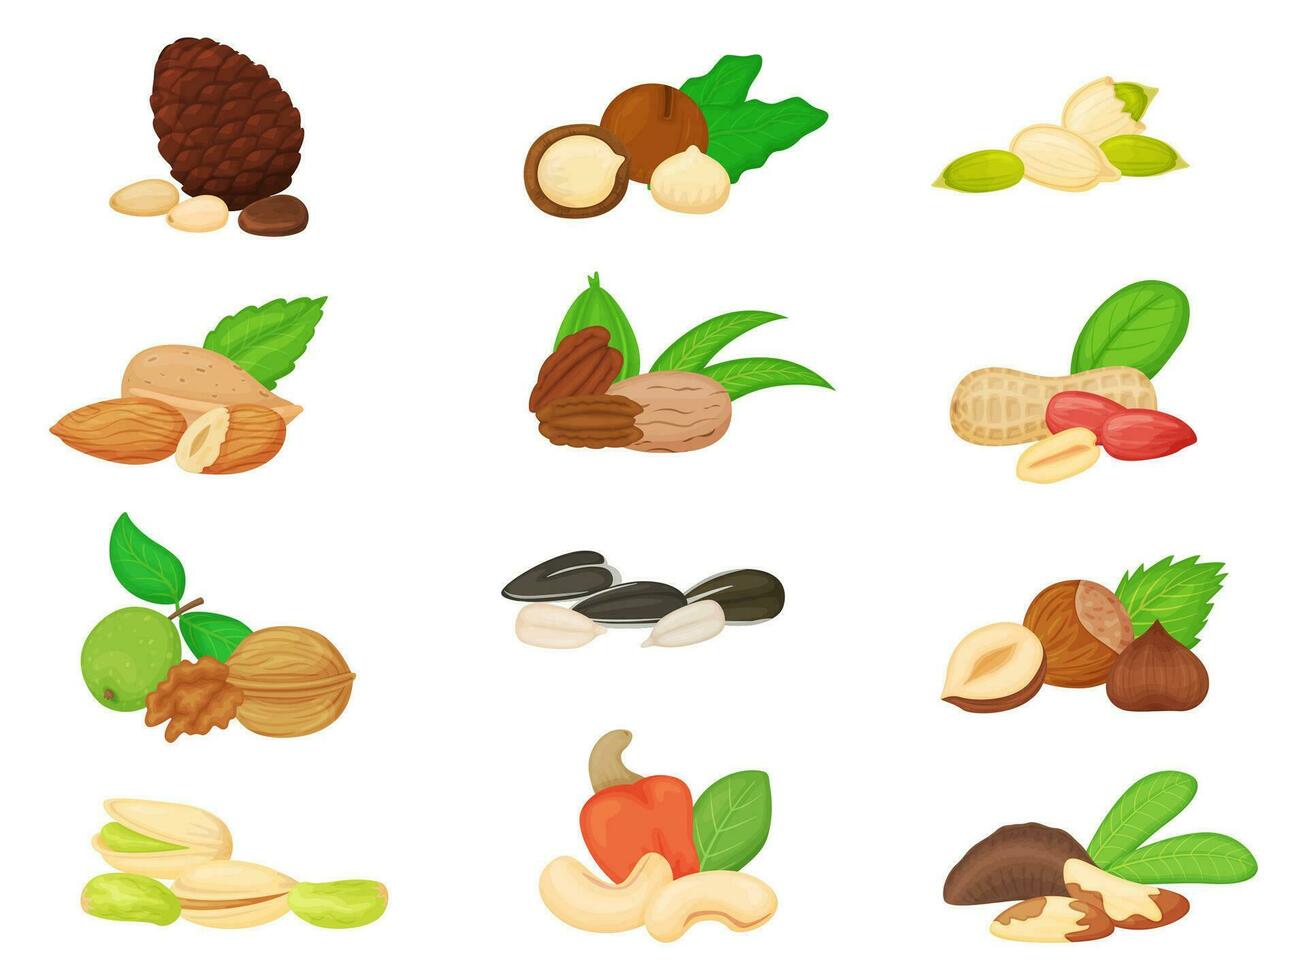 tecknad serie nötter och frön, valnöt, mandel, solros och pumpa utsäde. tall och Brasilien nöt, pistasch, kasju, jordnöt, hasselnöt vektor uppsättning